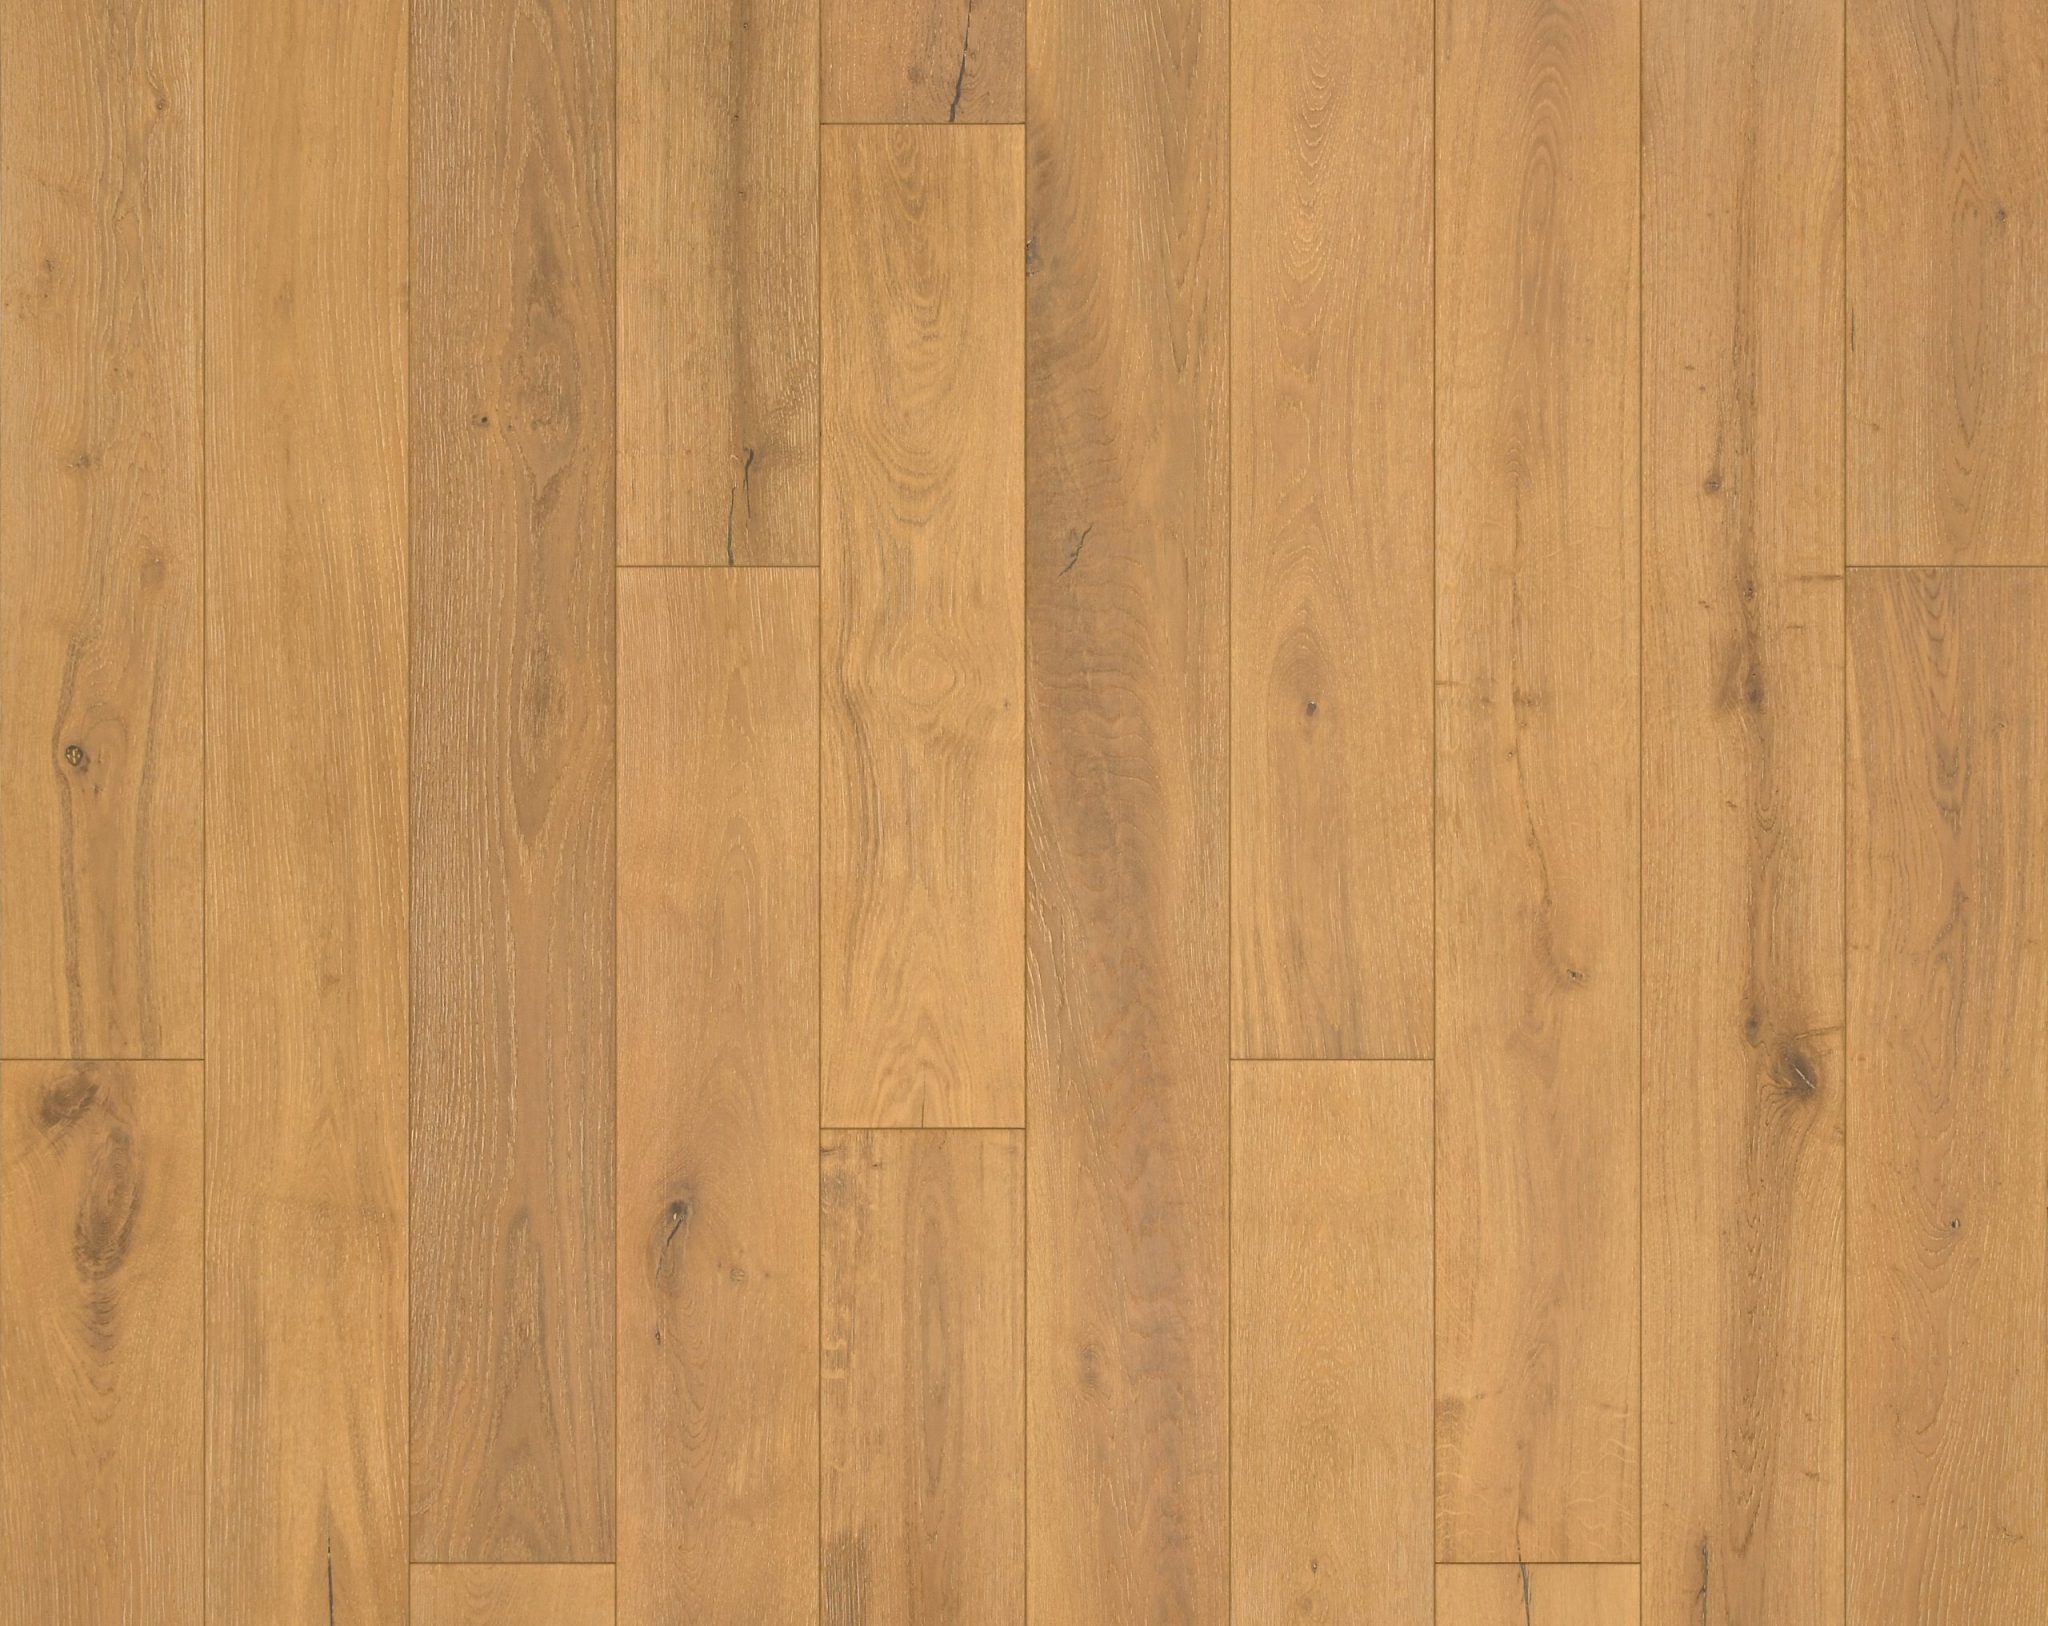 European Oak Vo Garrison, Da Vinci Laminate Flooring